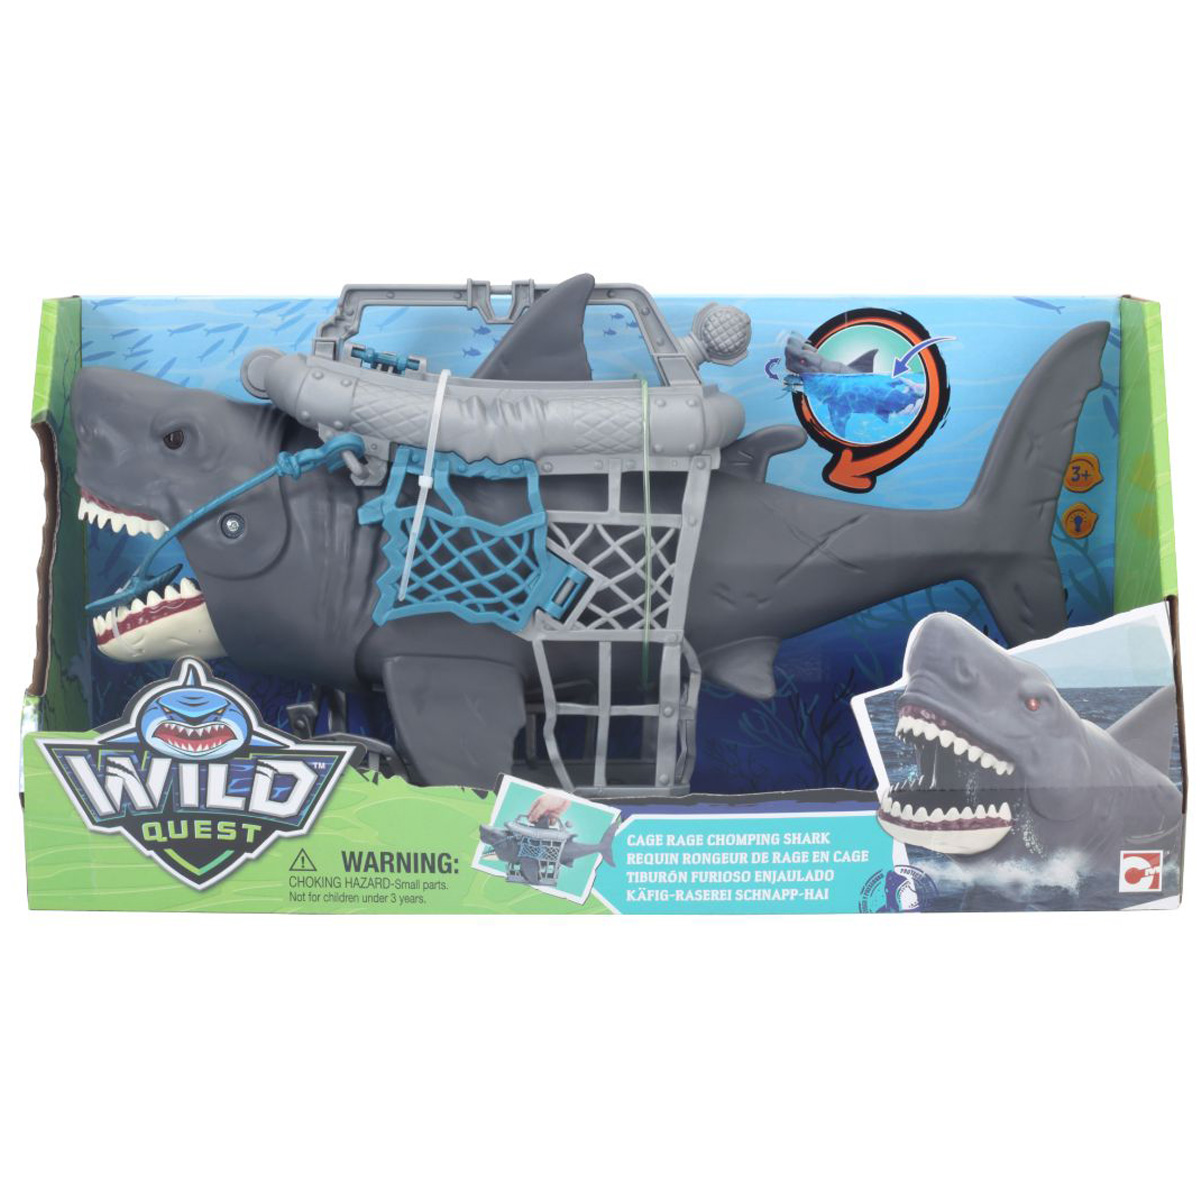 Set de joaca rechin in cusca, Wild Quest cusca imagine noua responsabilitatesociala.ro